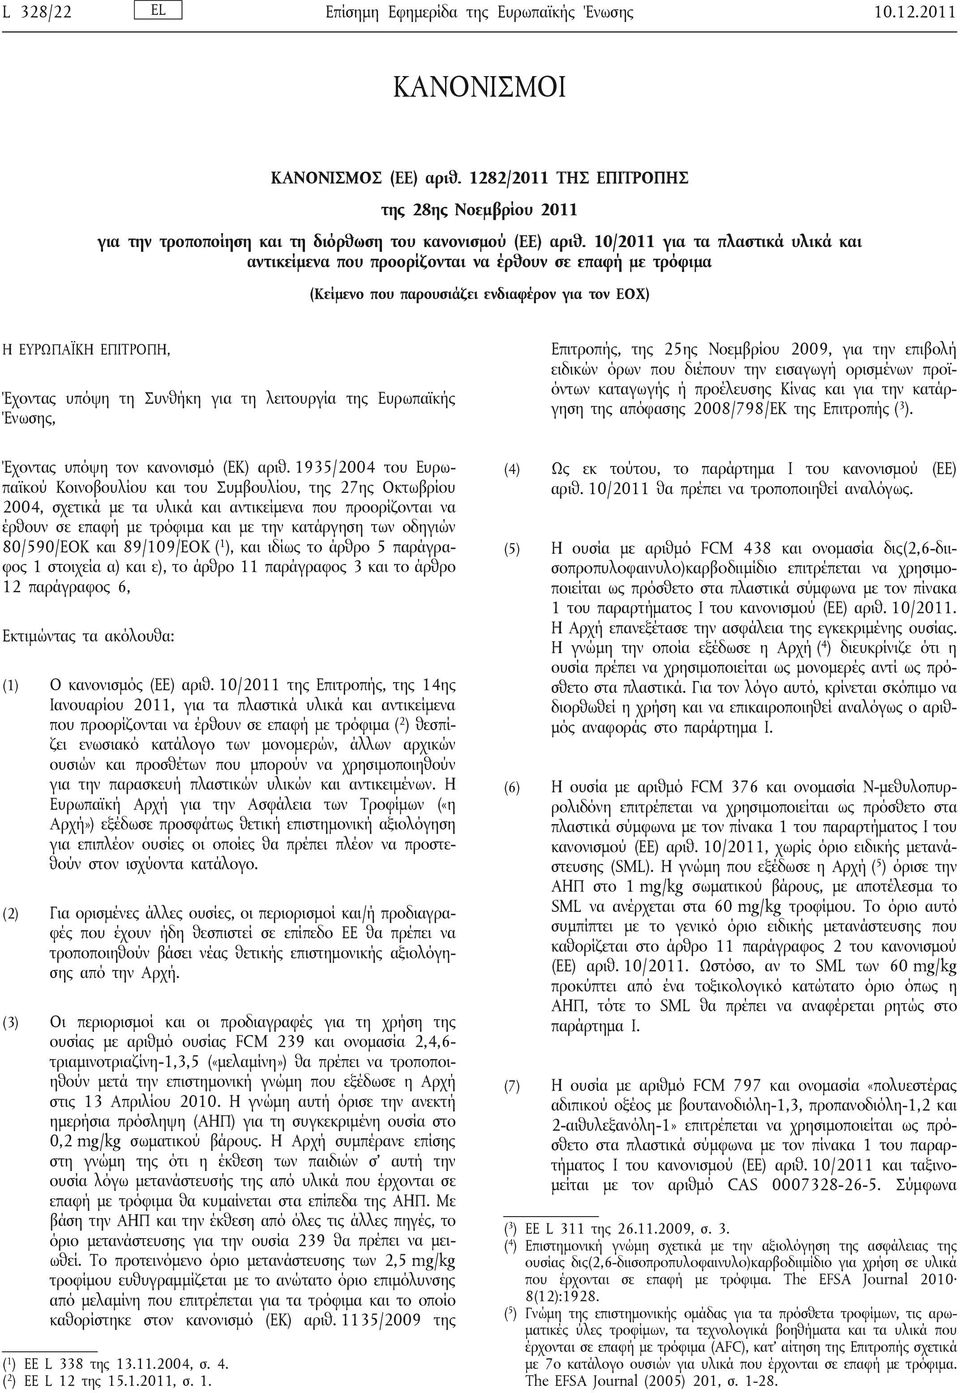 λειτουργία Ευρωπαϊκής Ένωσης, Επιτροπής, 25ης Νοεμβρίου 2009, για την επιβολή ειδικών όρων που διέπουν την εισαγωγή ορισμένων προϊόντων καταγωγής ή προέλευσης Κίνας και για την κατάργηση απόφασης